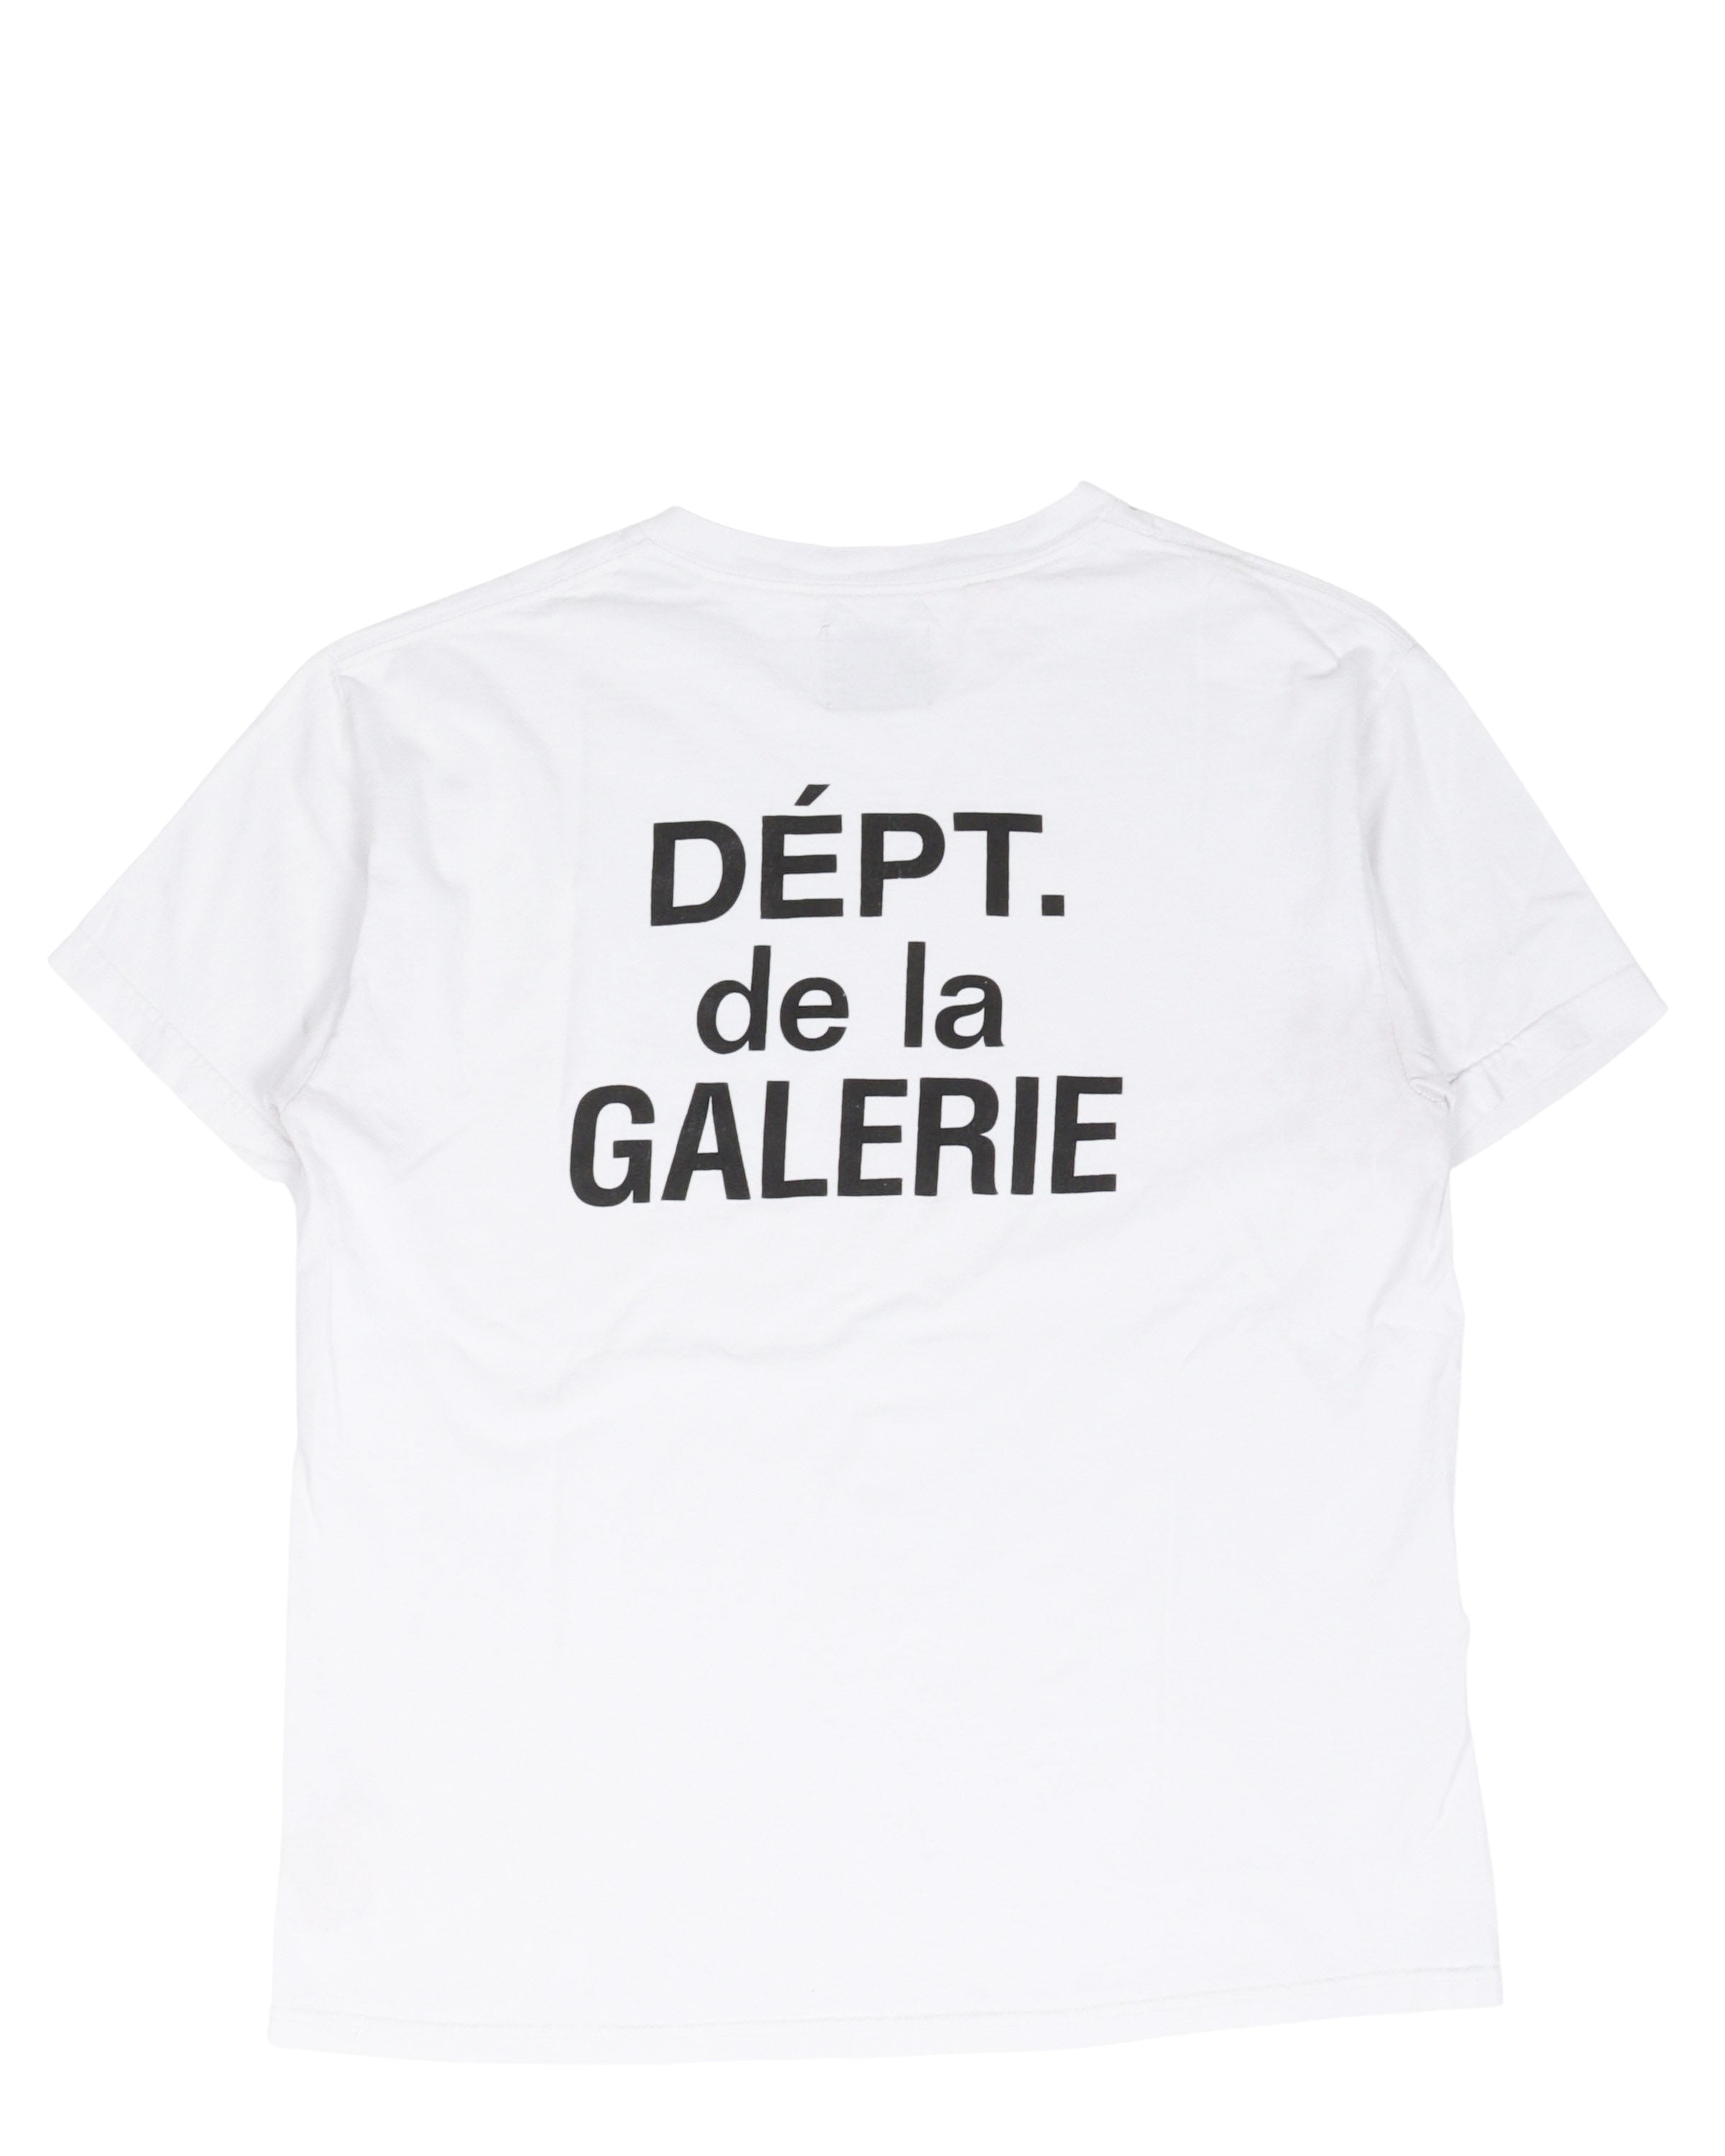 Dept. de la Galerie T-Shirt